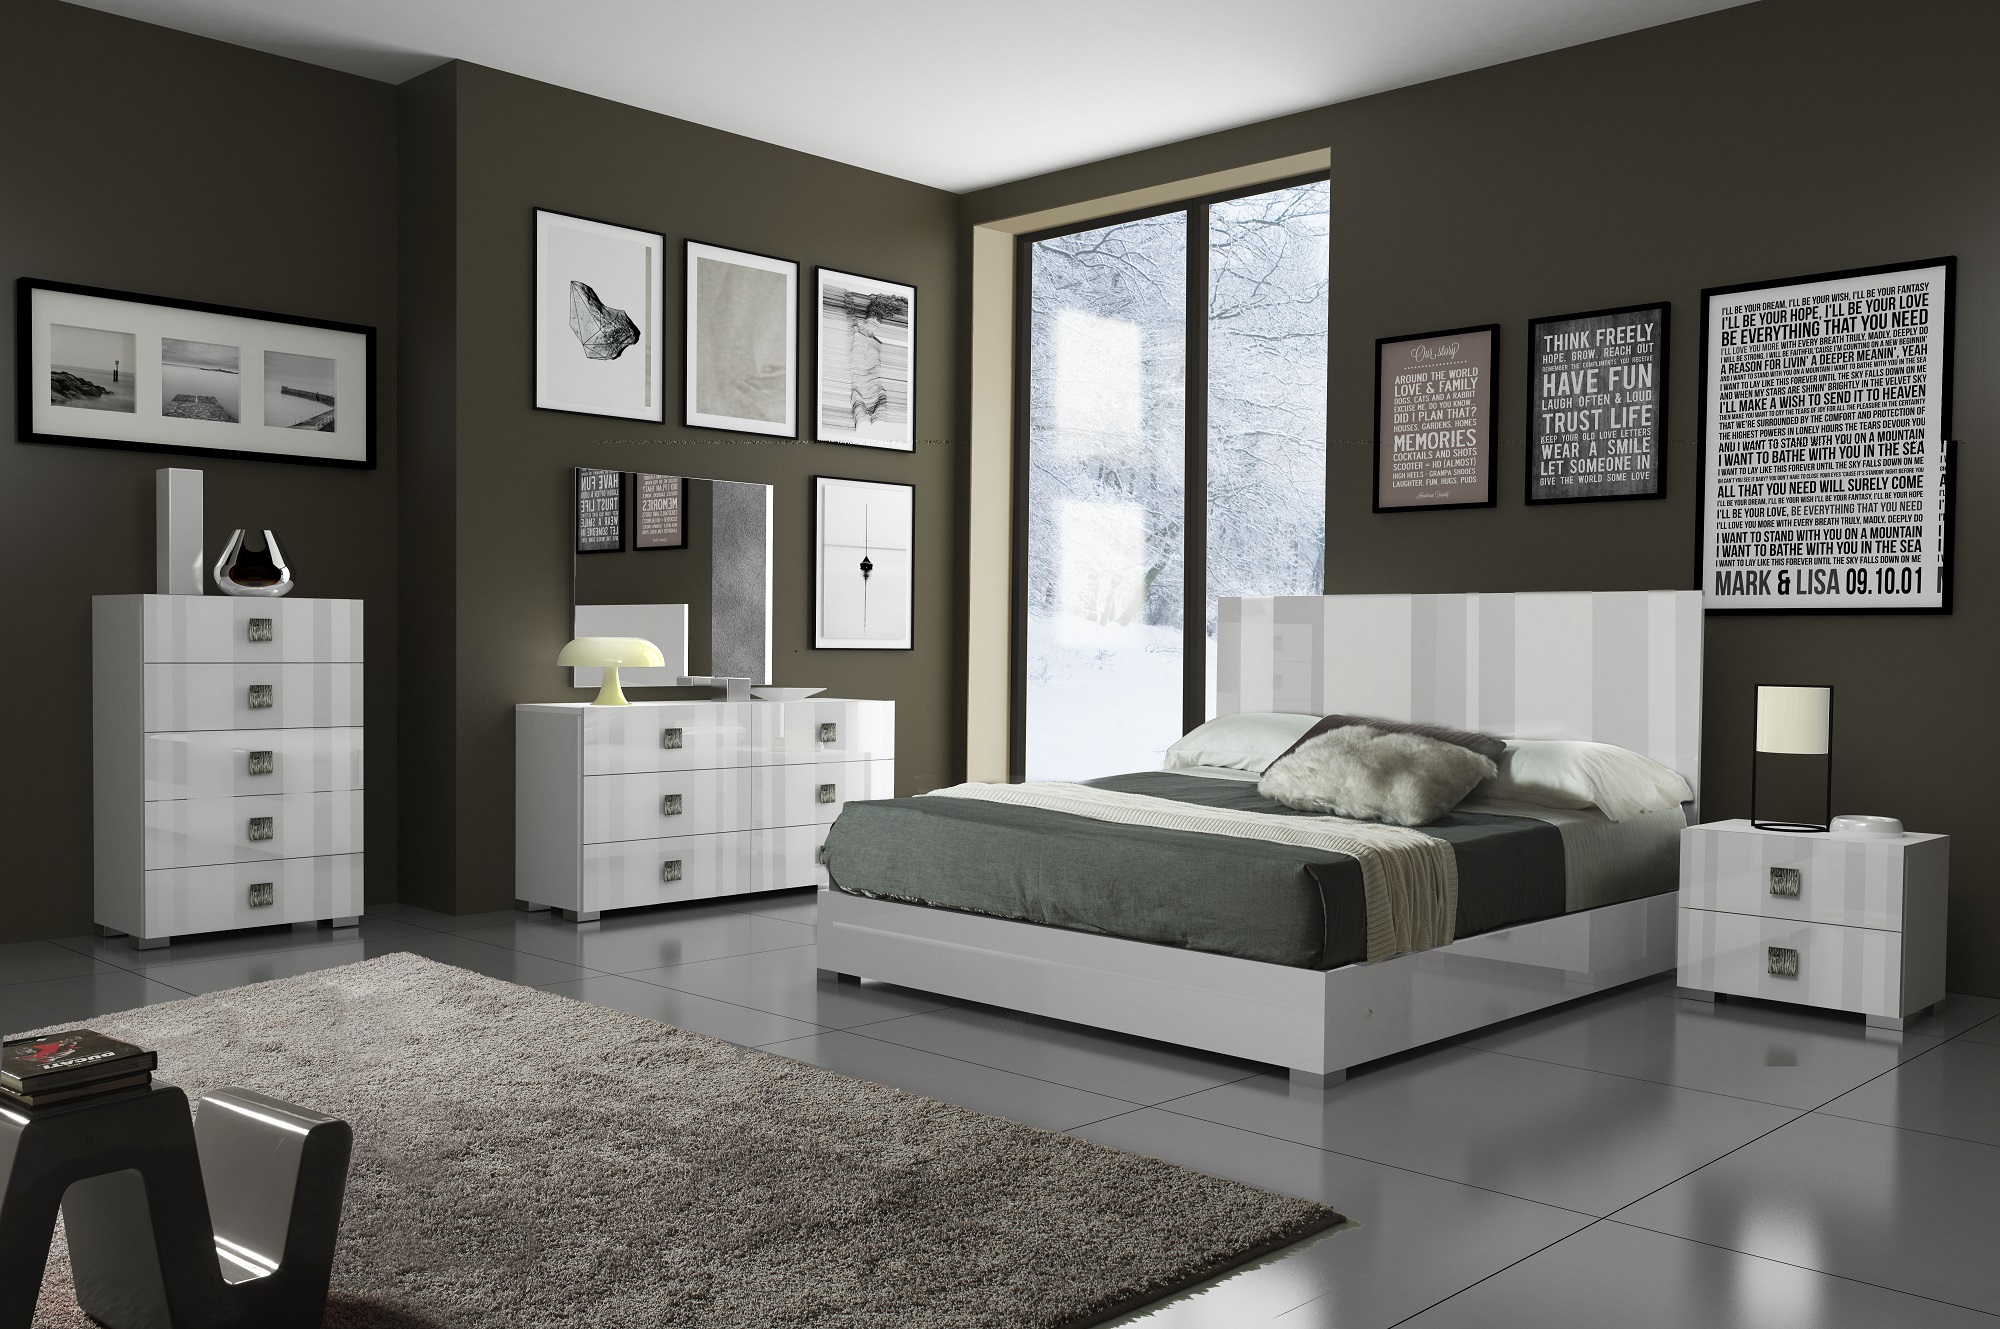 new furniture design for bedroom